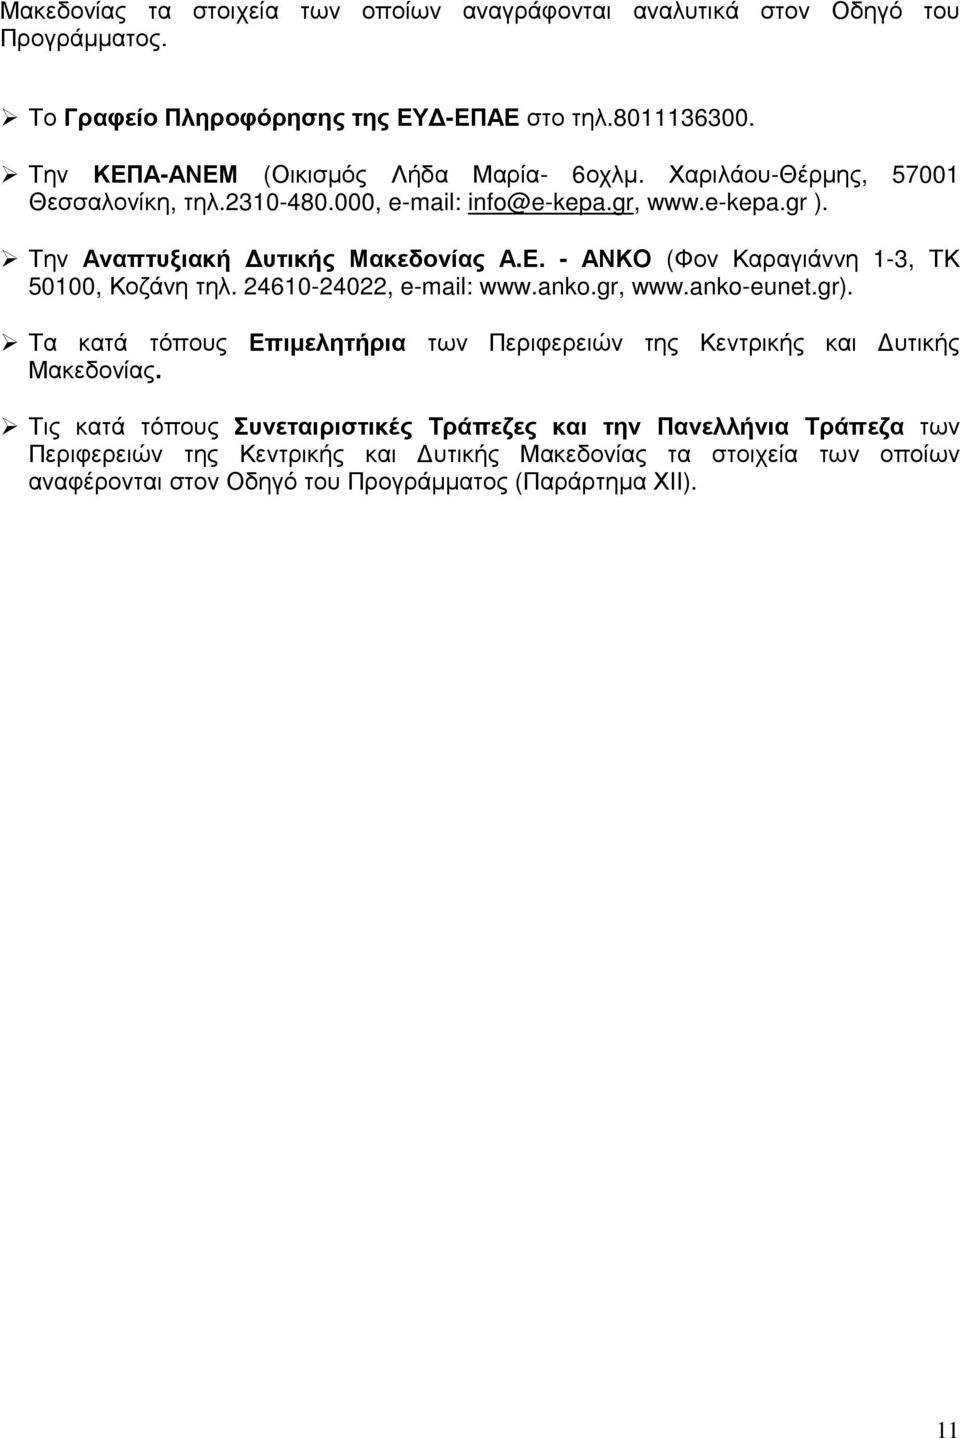 24610-24022, e-mail: www.anko.gr, www.anko-eunet.gr). Τα κατά τόπους Επιµελητήρια των Περιφερειών της Κεντρικής και υτικής Μακεδονίας.